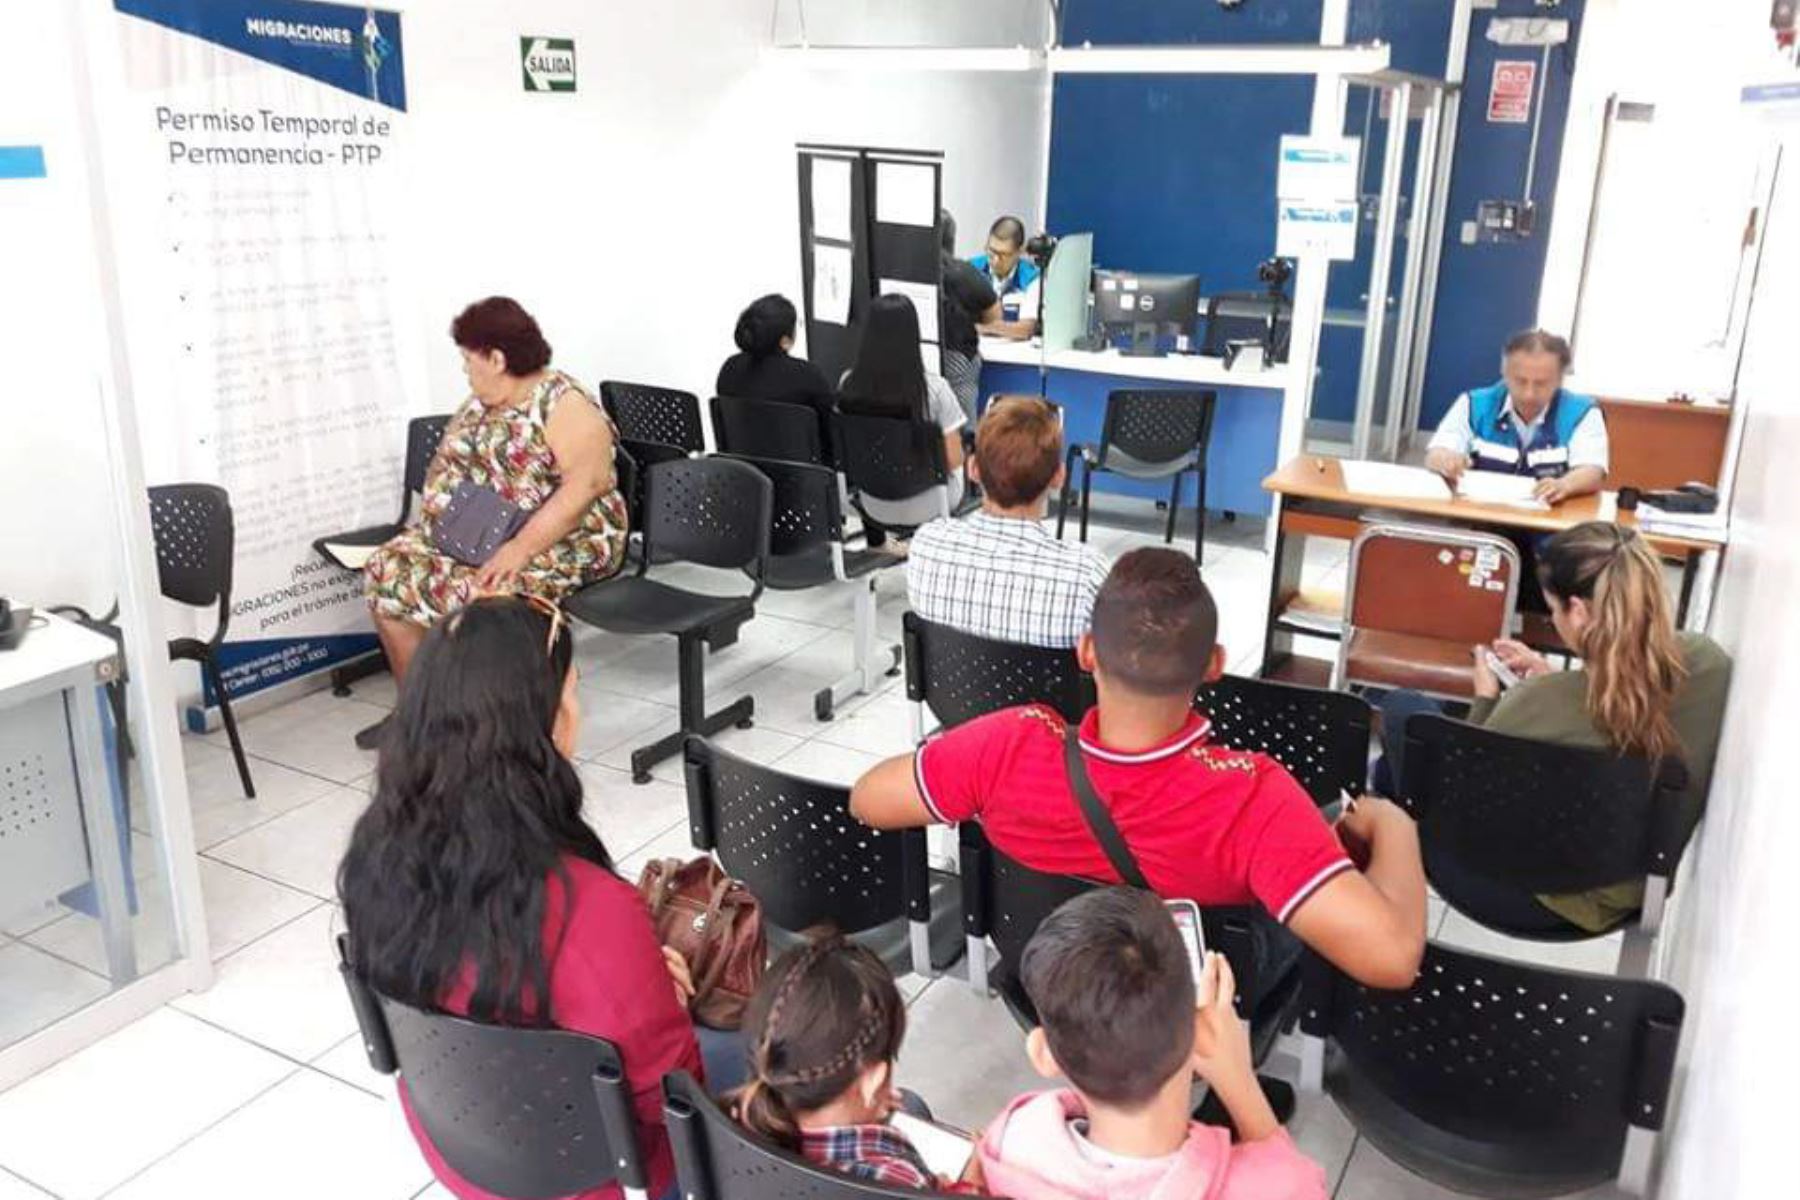 ANDINAVenezolanos obtienen su permiso temporal de permanencia en Chimbote. ANDINA